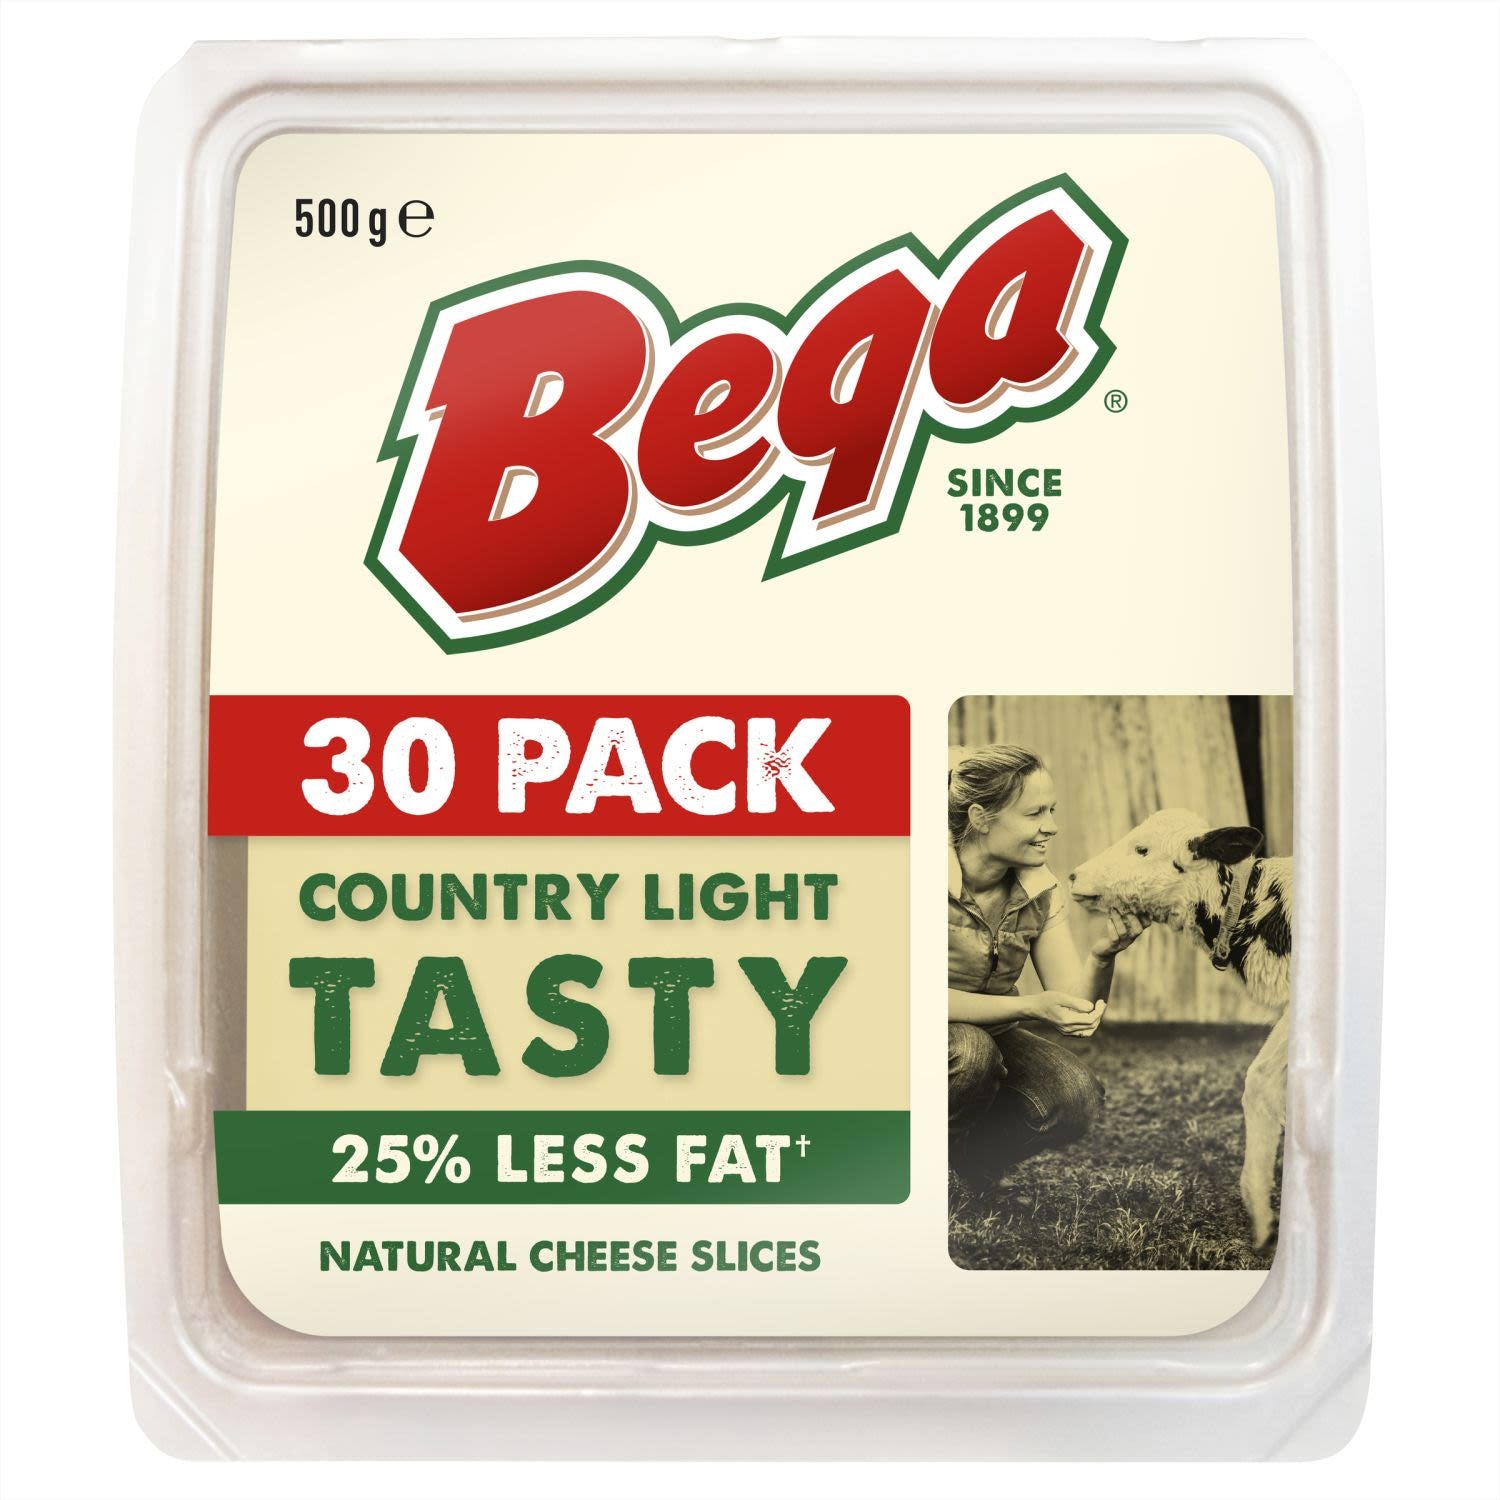 Bega Light Tasty Cheese Slices 25% Less Fat 500g 30pk